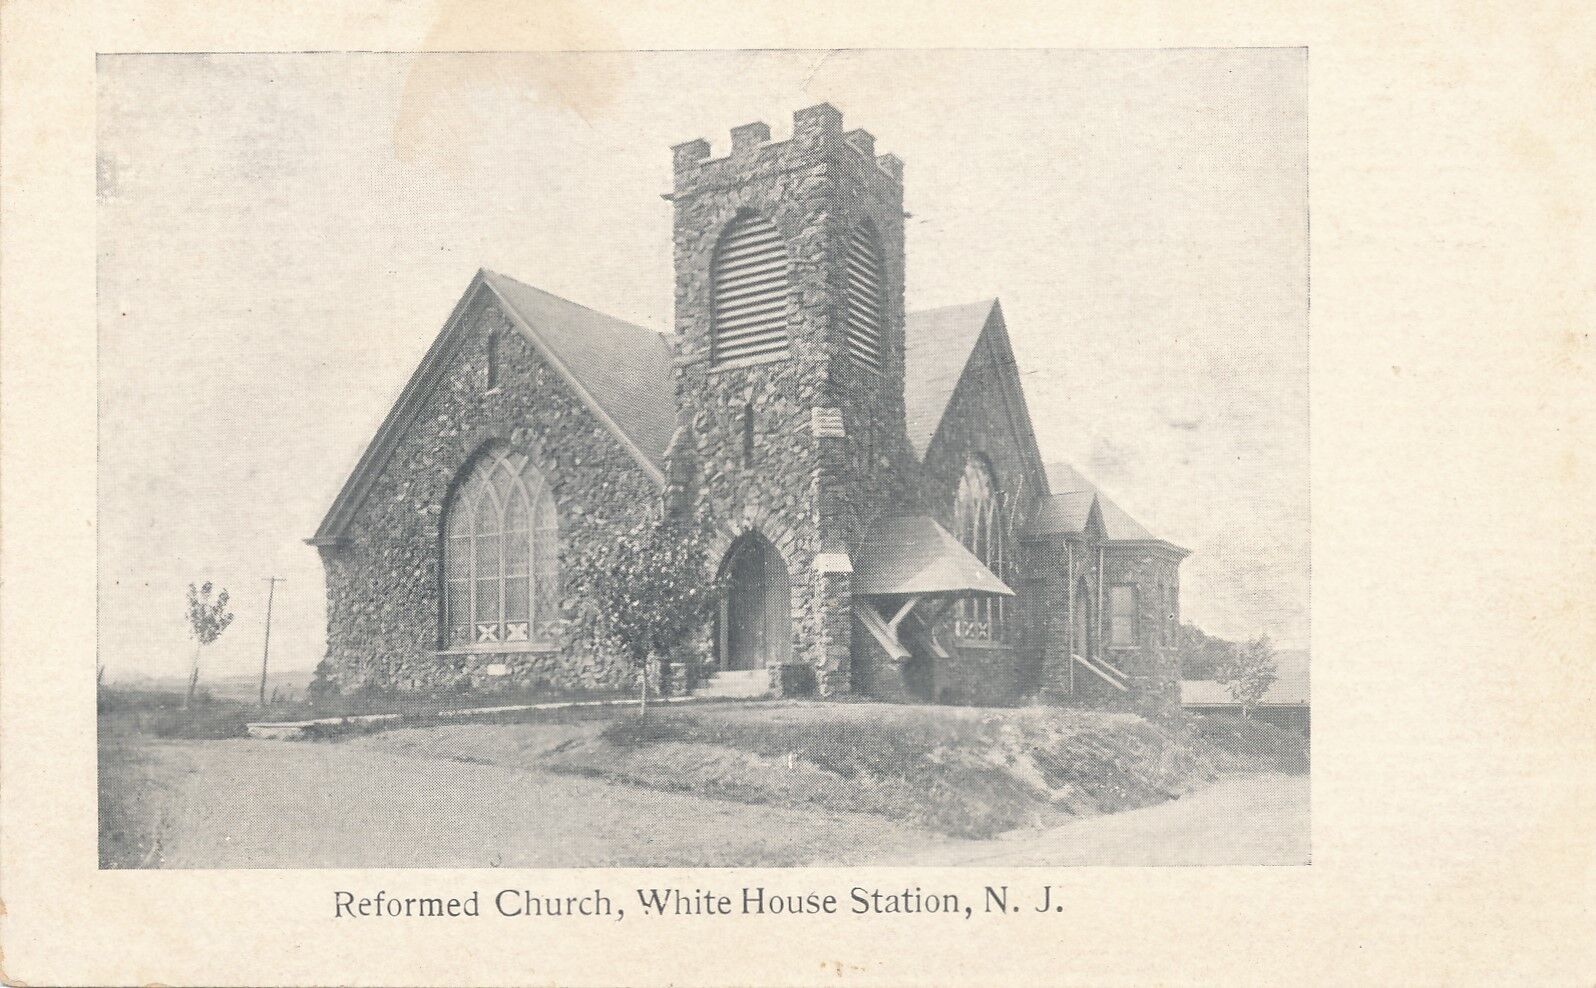 WHITE HOUSE STATION NJ – Reformed Church